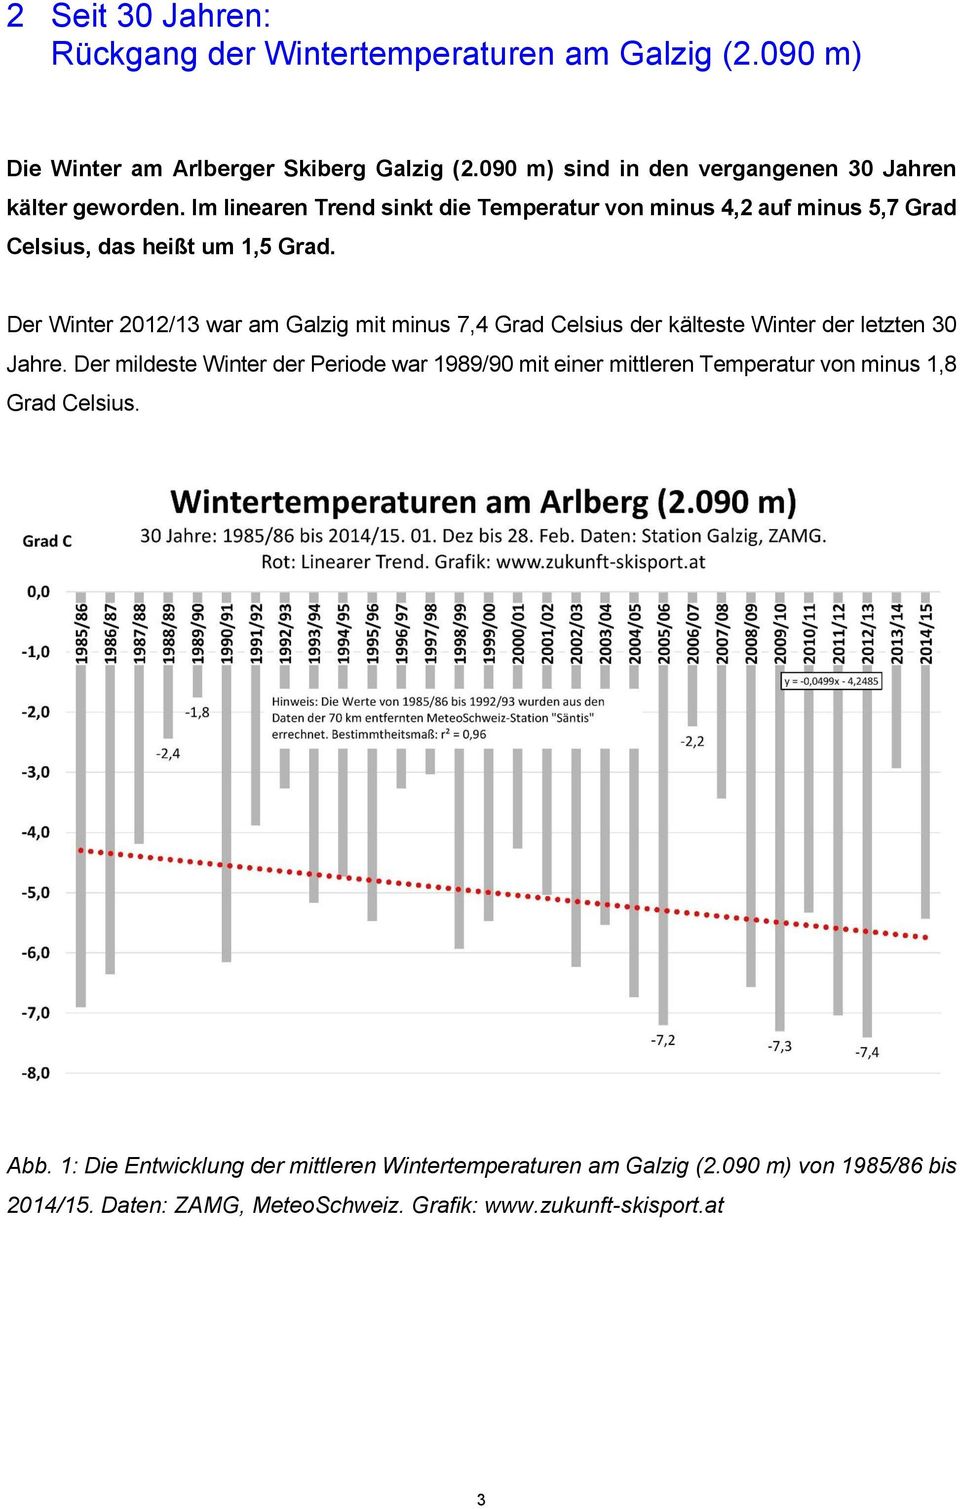 Der Winter 2012/13 war am Galzig mit minus 7,4 Grad Celsius der kälteste Winter der letzten 30 Jahre.